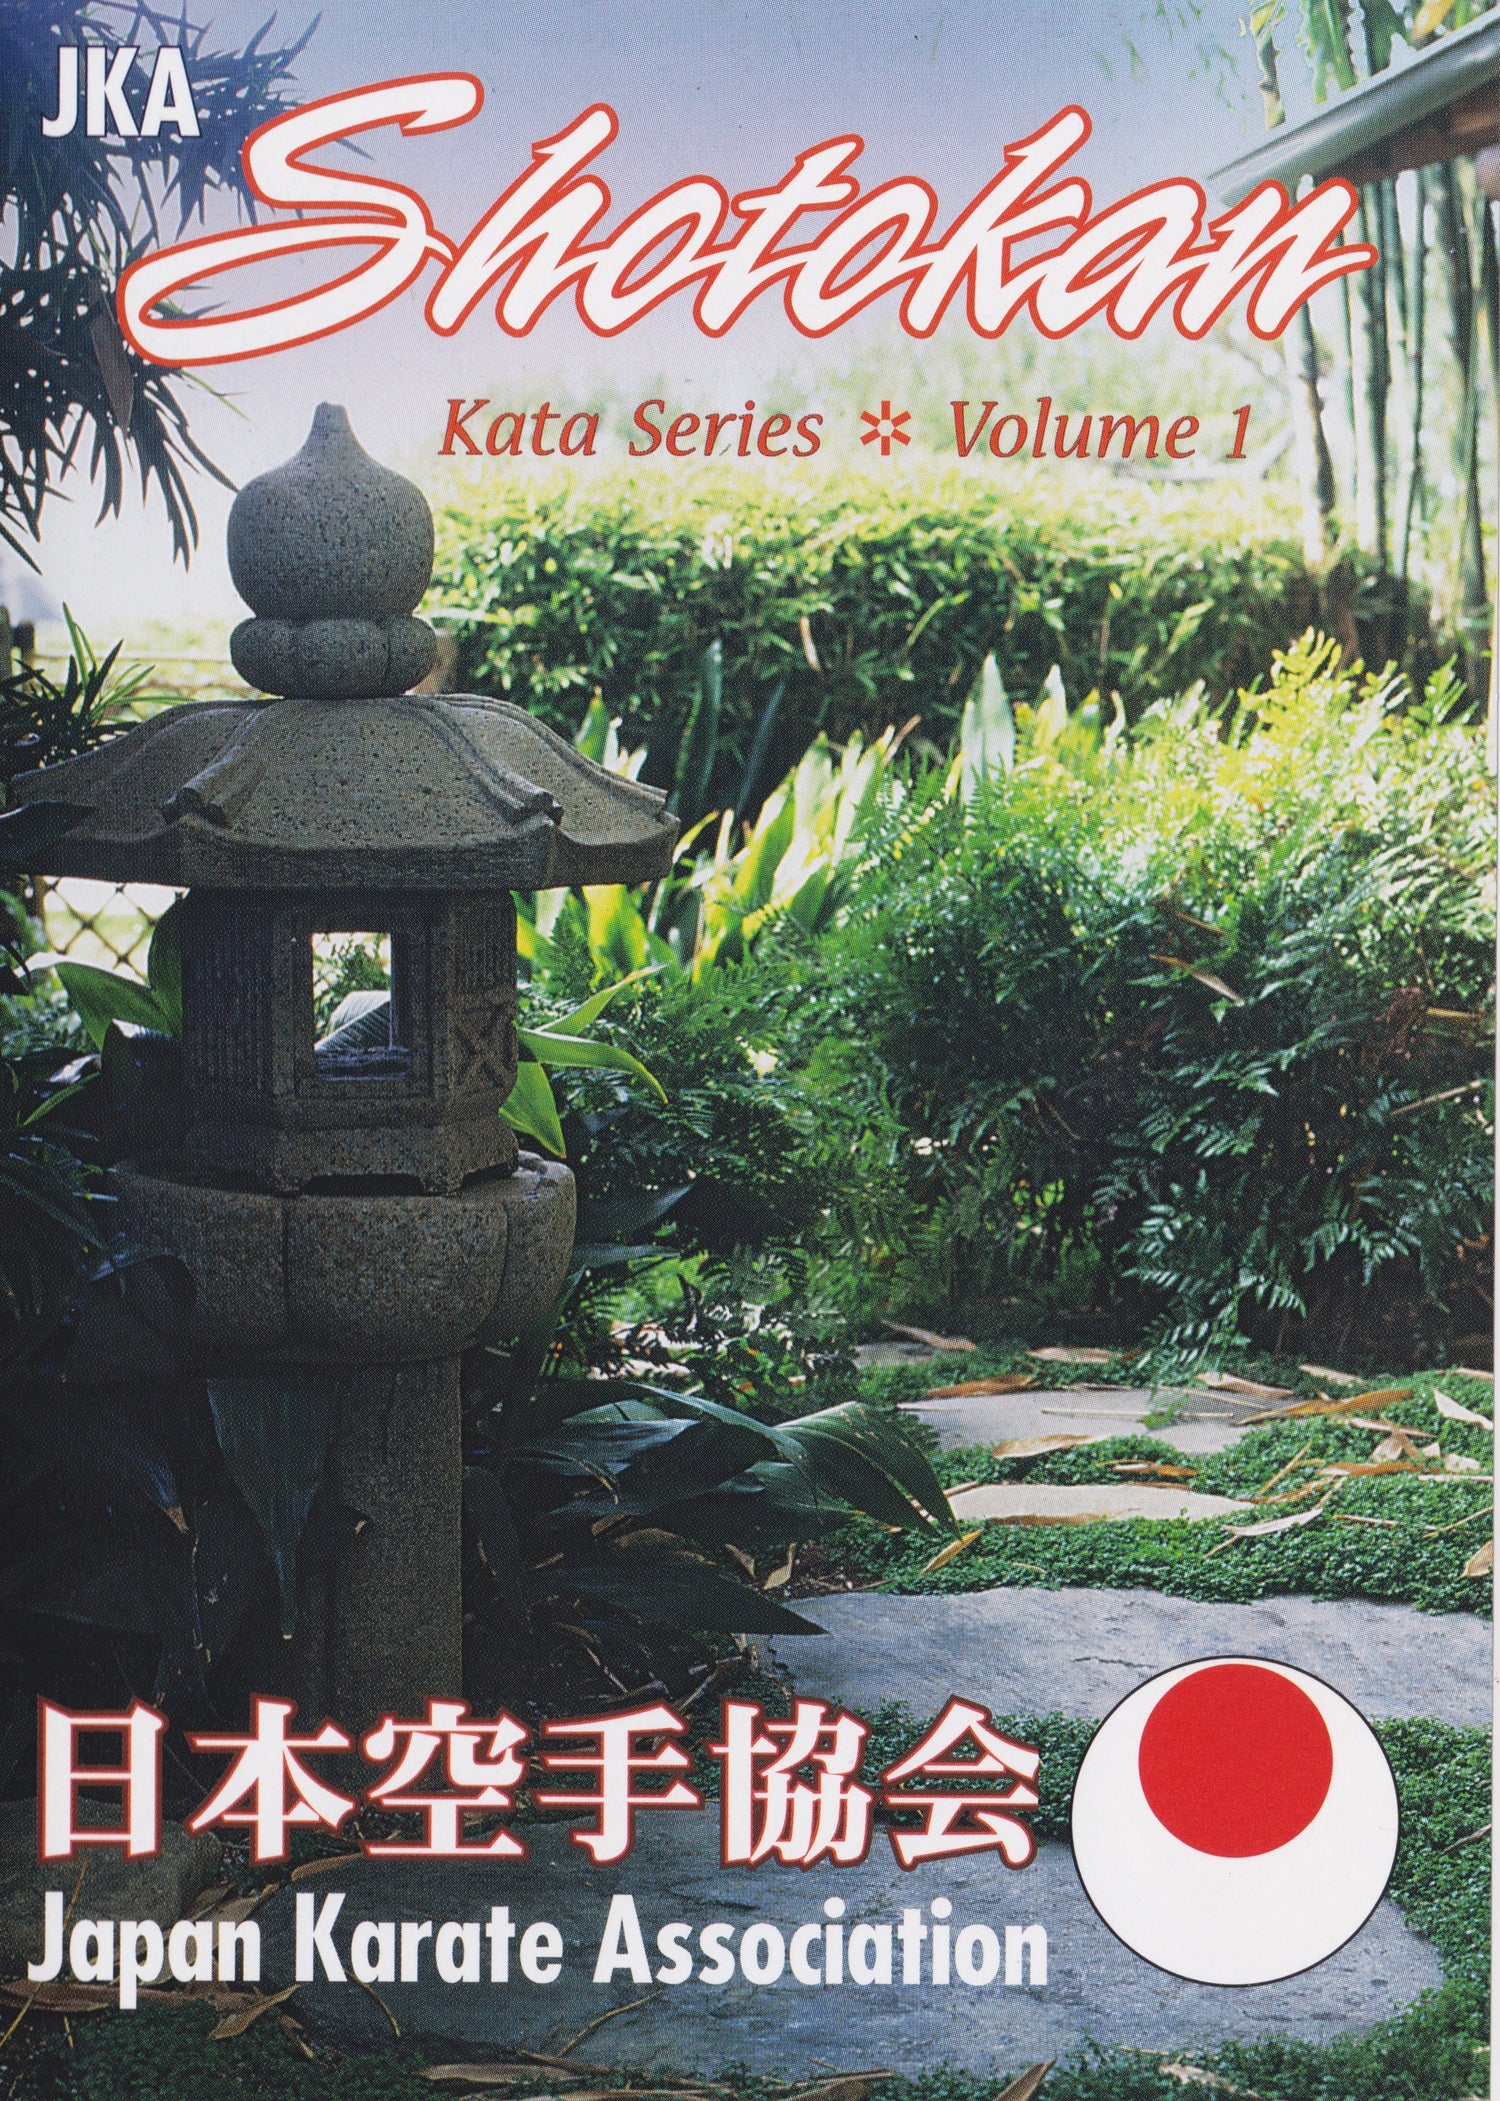 Serie Shotokan Kata Vol 1 DVD de Masataoshi Nayama